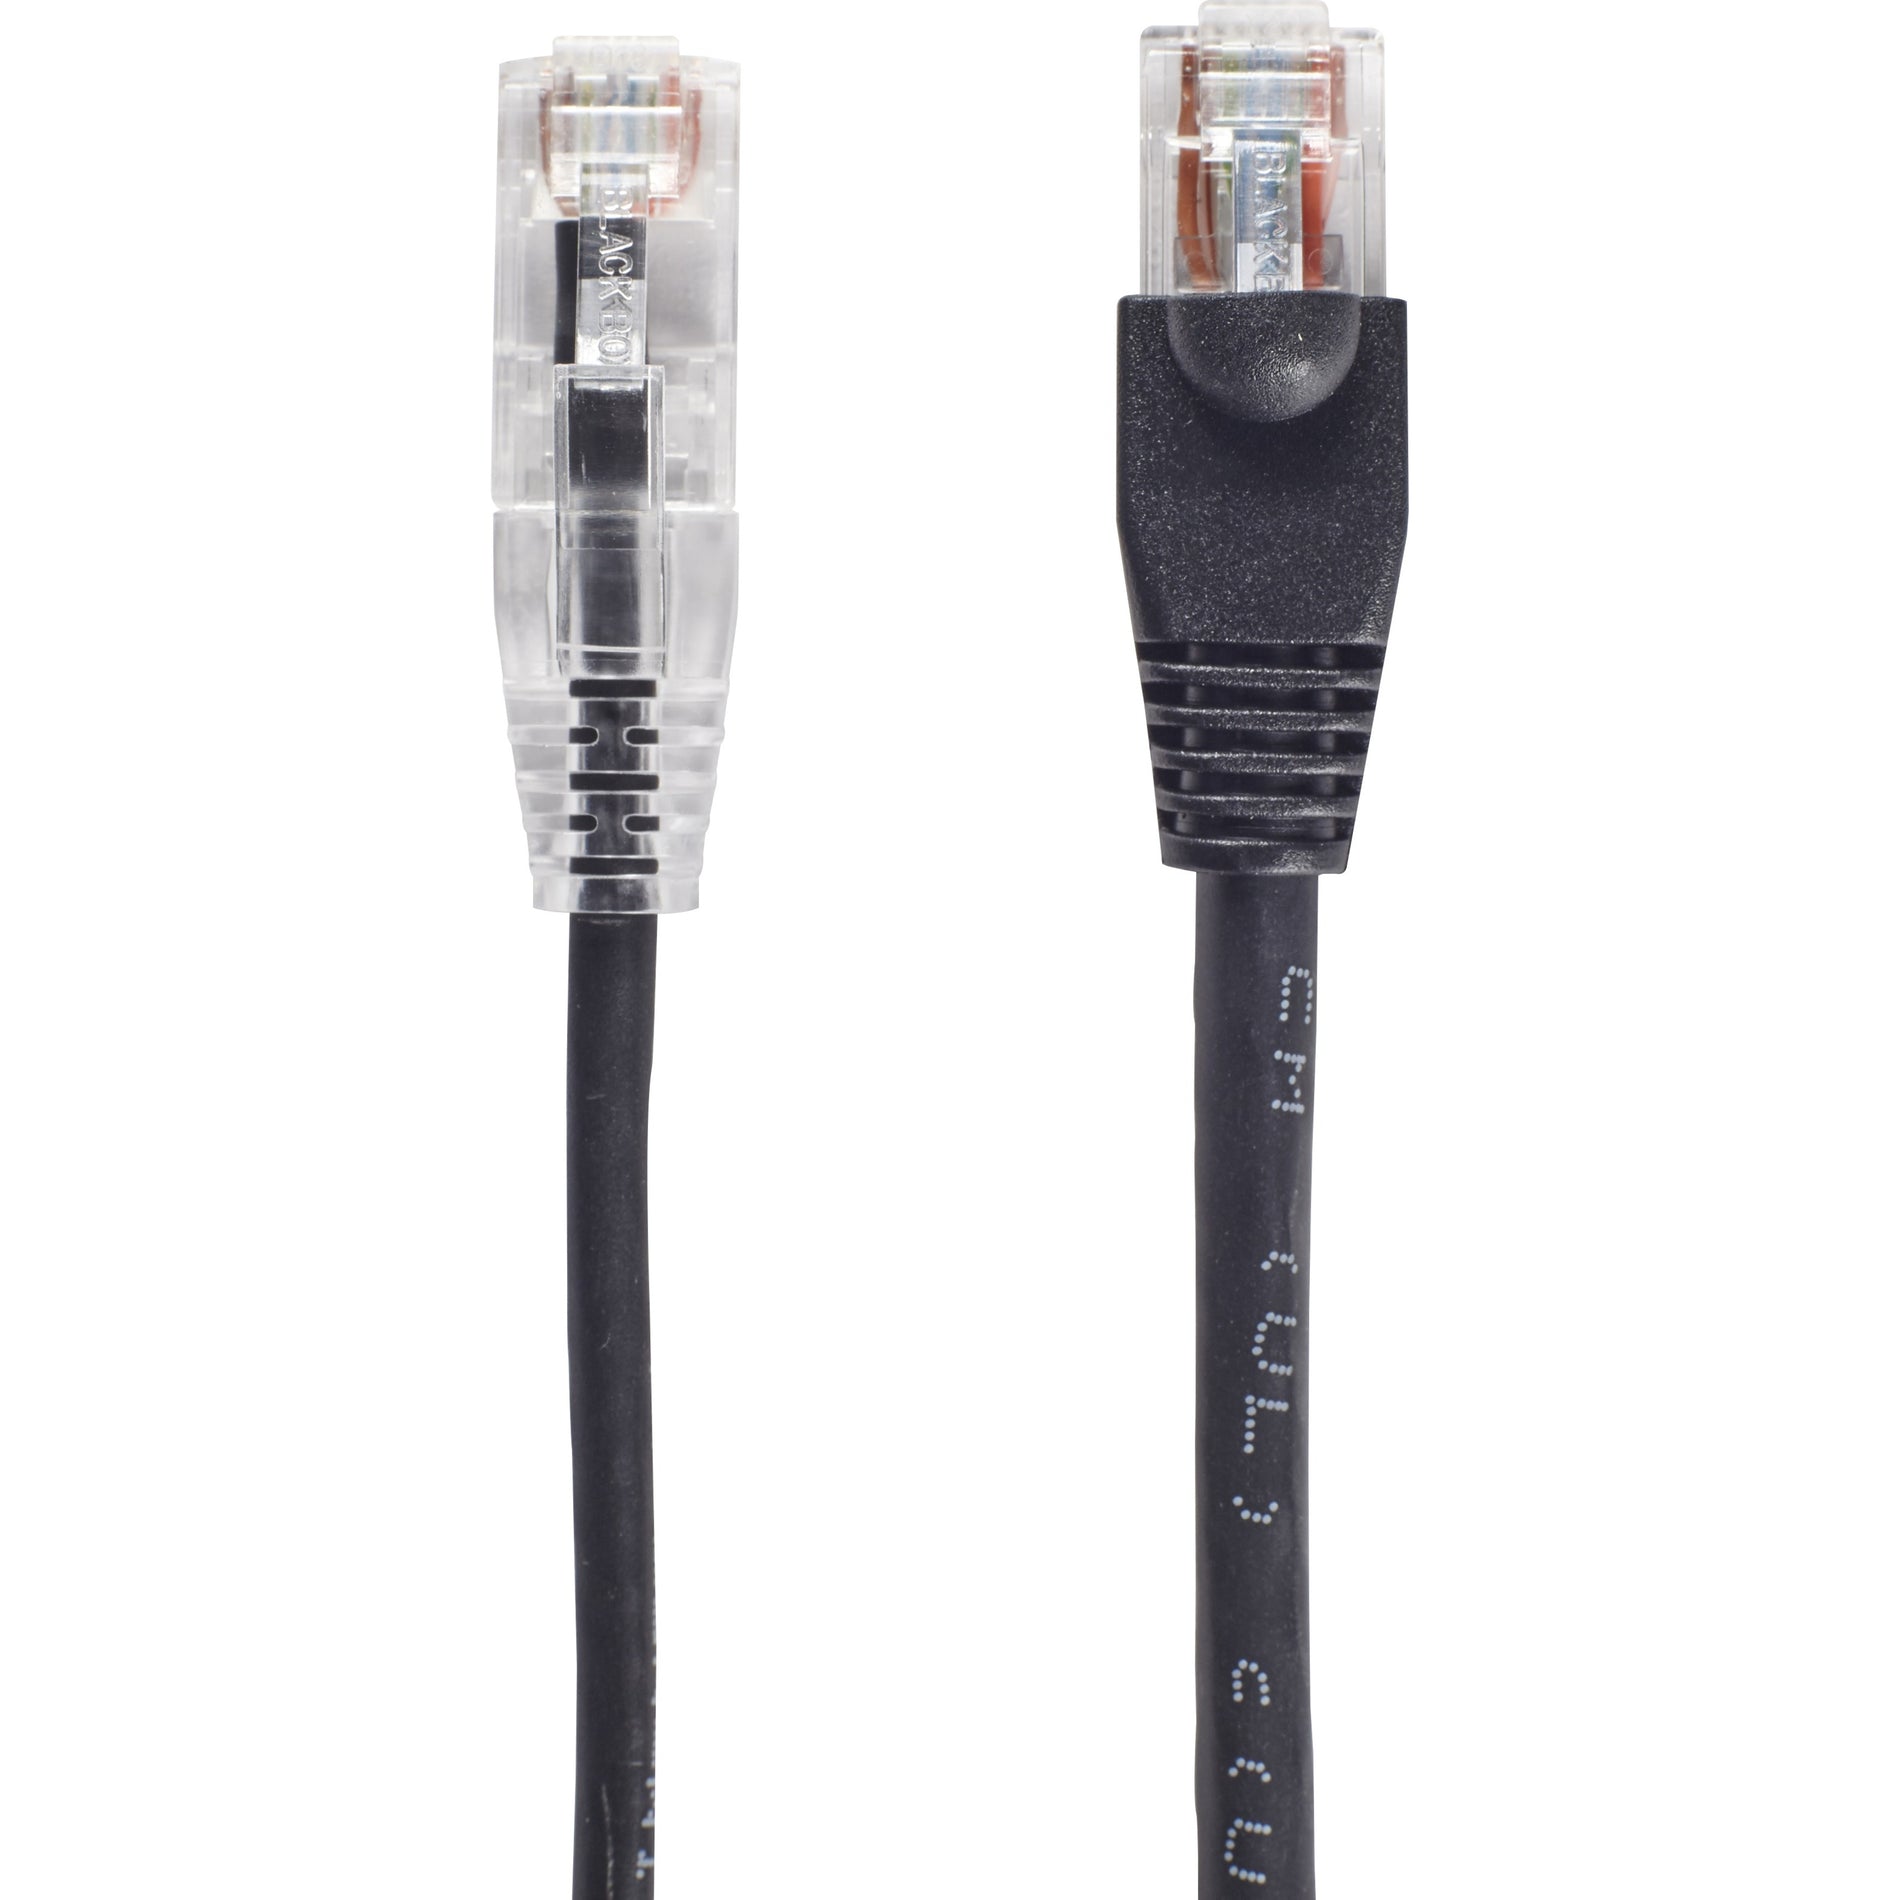 Cable de red de parche UTP Cat.6a Slim-Net C6APC28-BK-07 de Black Box 7 pies bota sin enganches velocidad de transferencia de datos de 10 Gbit/s